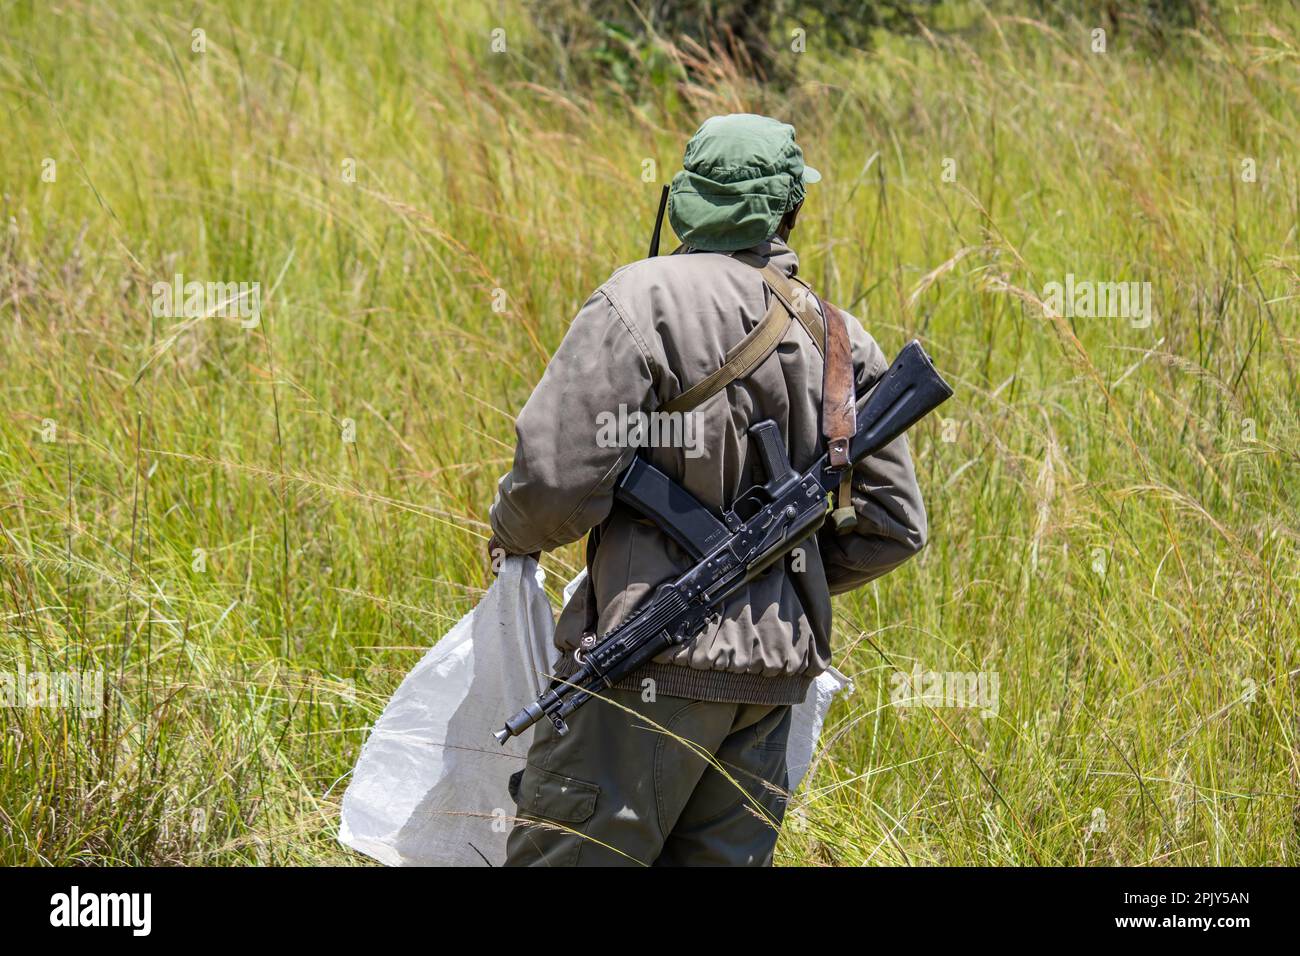 Rangers armés d'armes dans le parc de conservation des animaux du Zimbabwe, à Imire Rhino & Wildlife Conservancy Banque D'Images